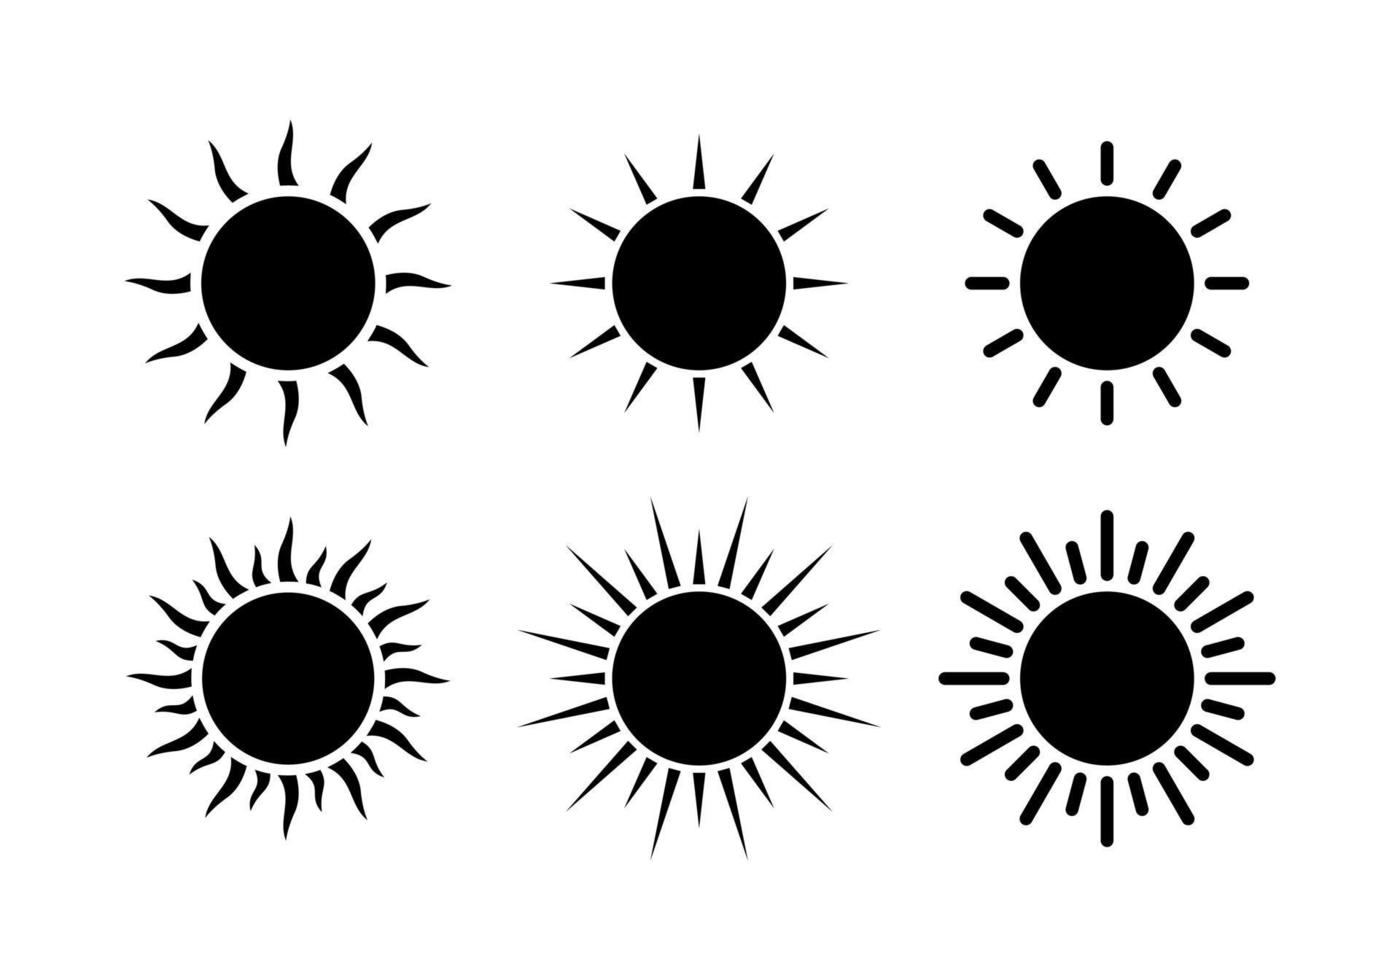 icone del sole. set di icone del sole isolato su sfondo bianco. illustrazione del disegno vettoriale dell'icona del sole. raccolta di vettore del sole.